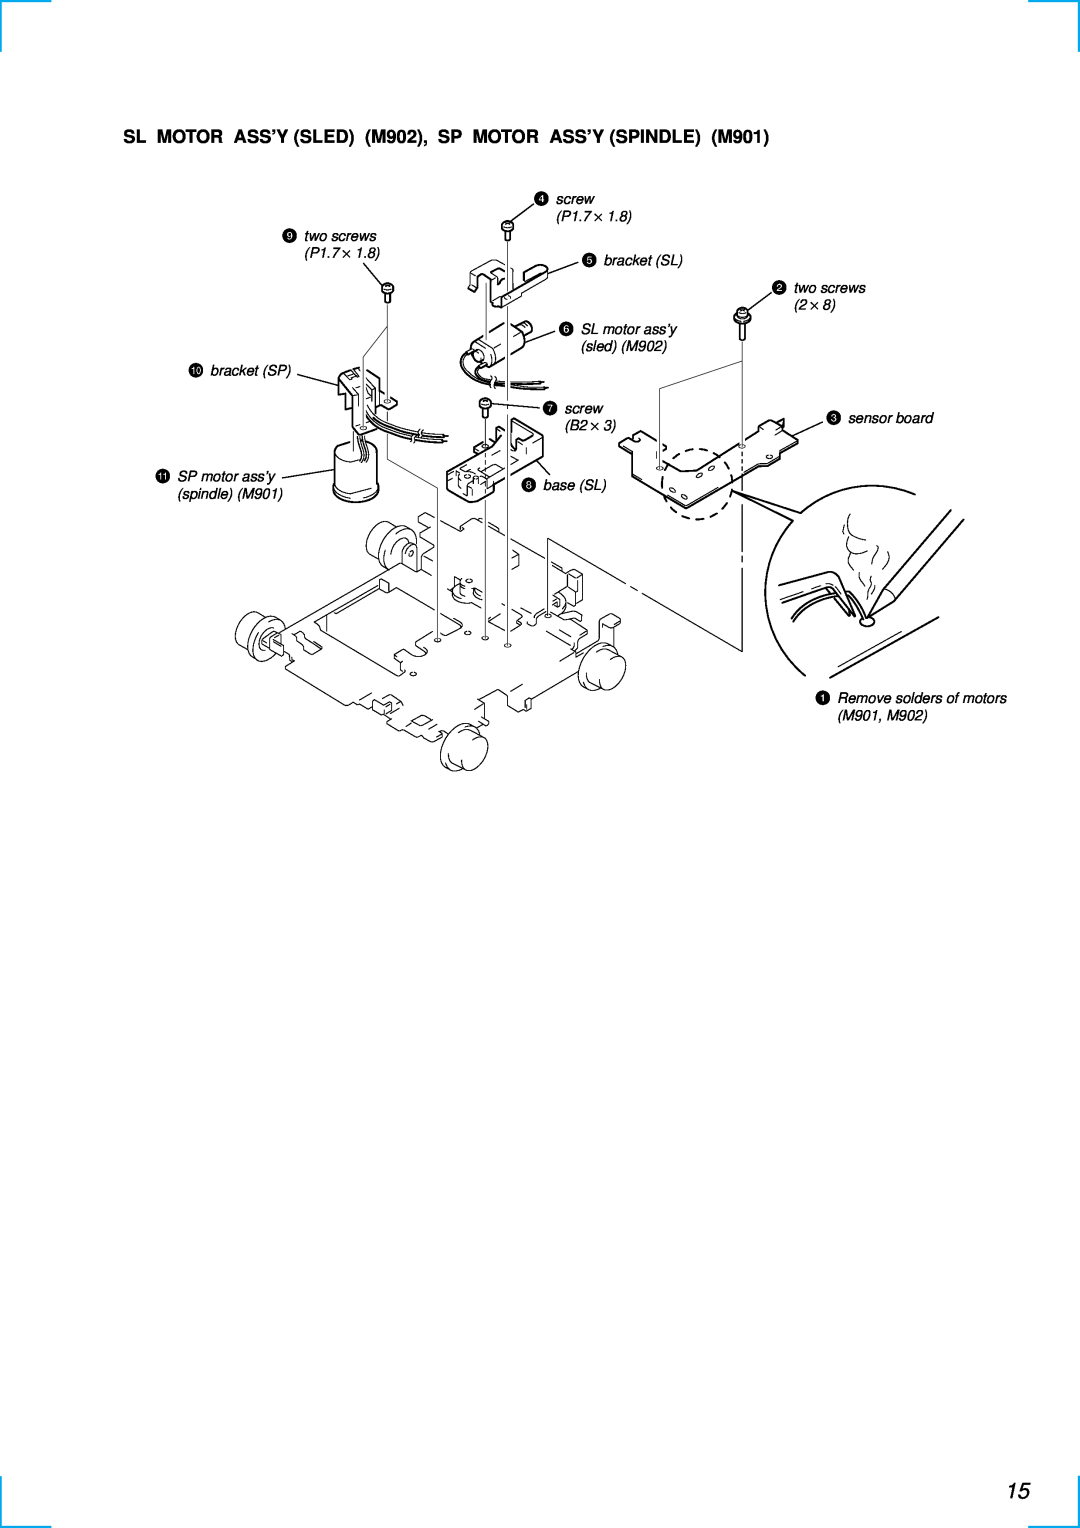 Sony MDX-C6500RV service manual two screws P1.7 ⋅ 0bracket SP, qa SP motor ass’y spindle M901, 4screw P1.7 ⋅ 5 bracket SL 